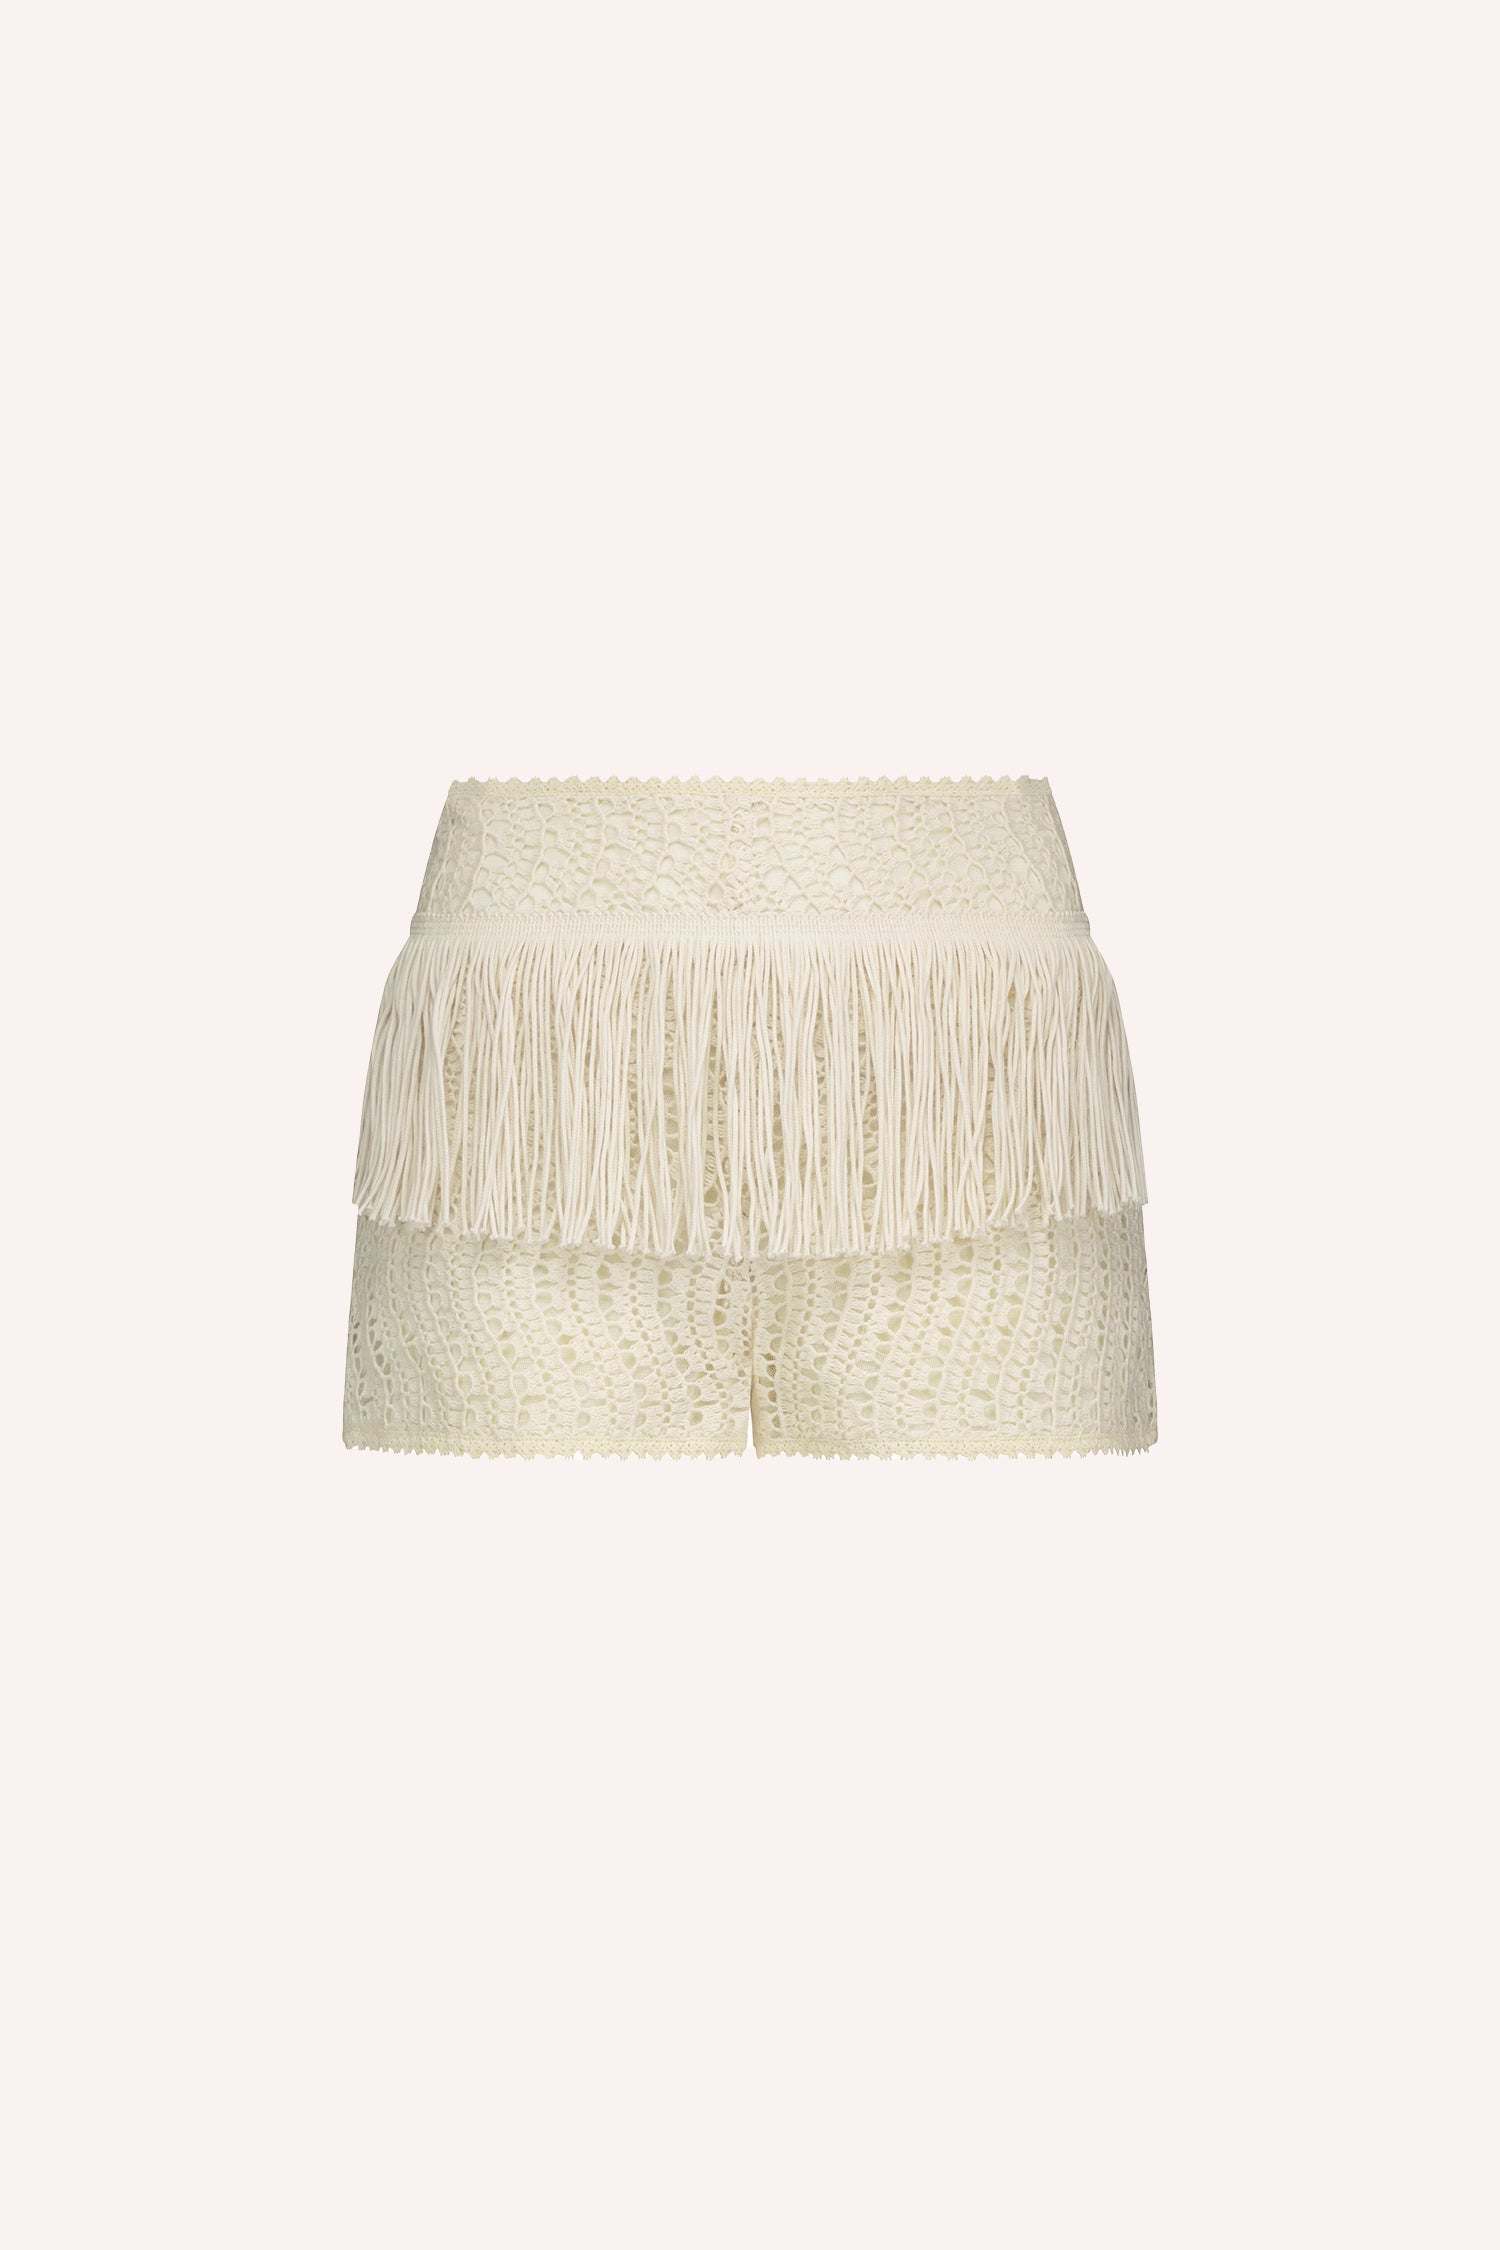 Anna Sui Shorts in pizzo all'uncinetto Crema, con una breve cintura di frange intorno ai fianchi, 